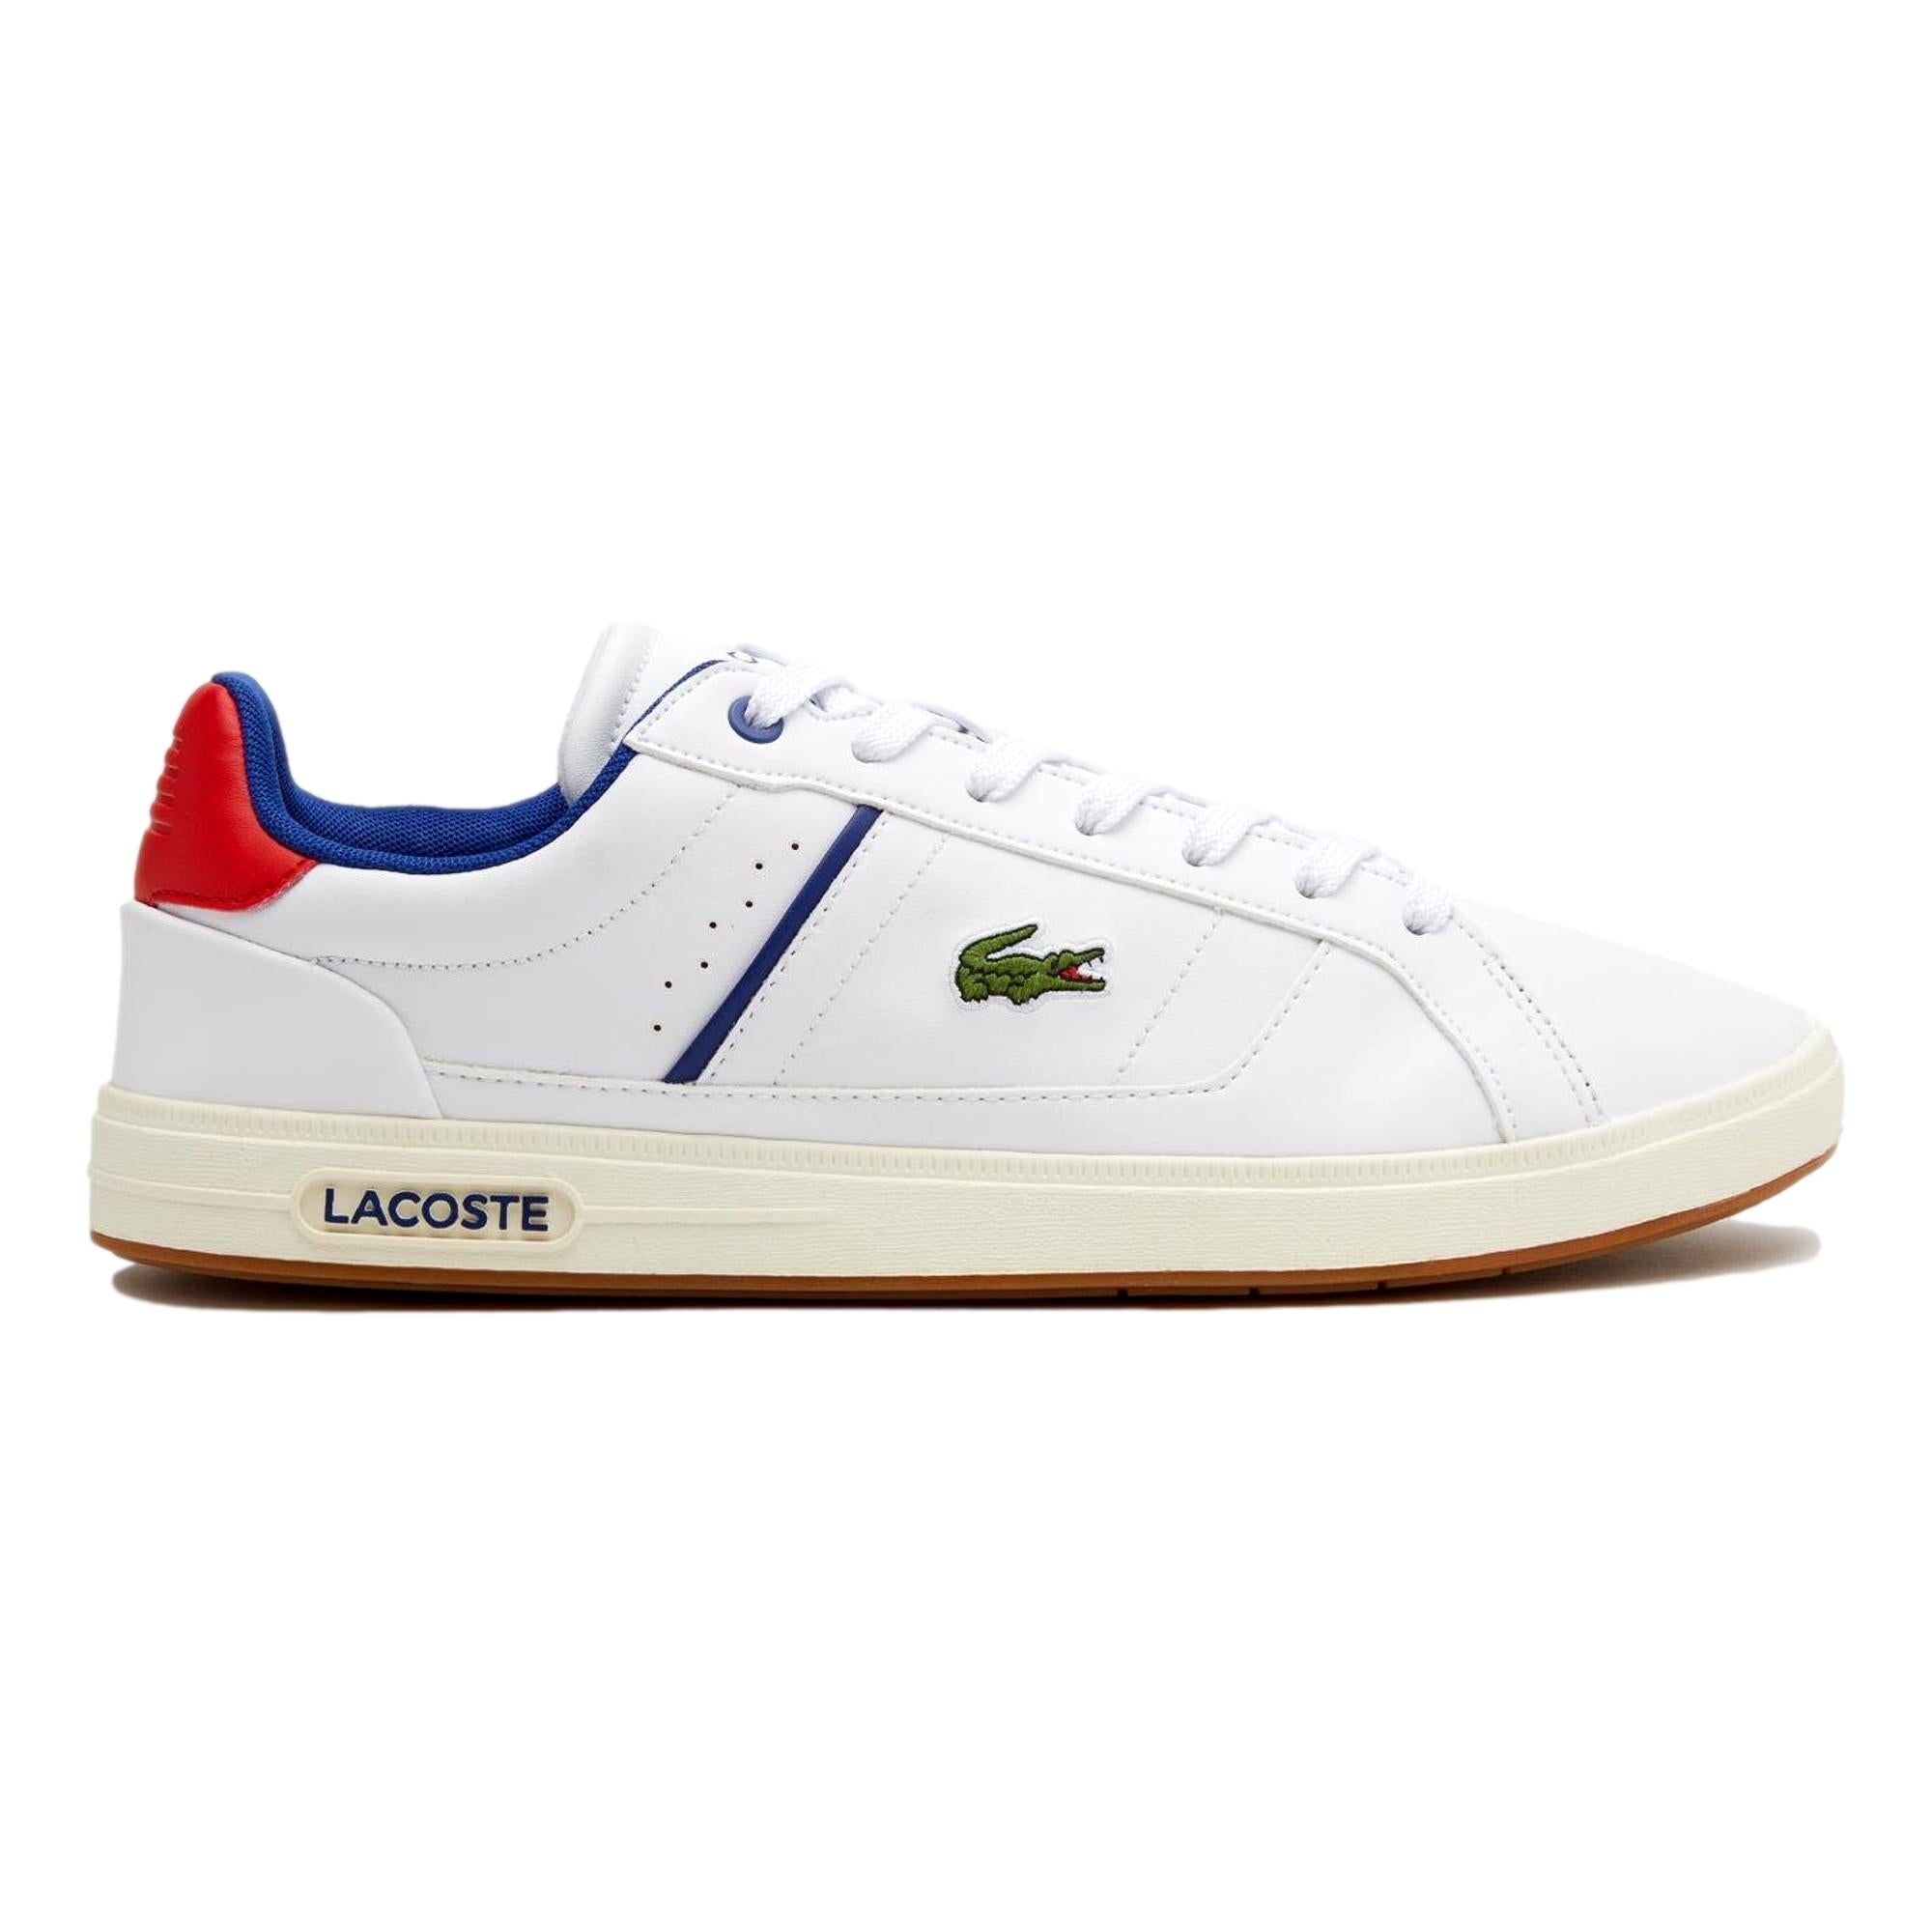 Zapatillas Lacoste - Hombre - Tennis Warehouse Europe